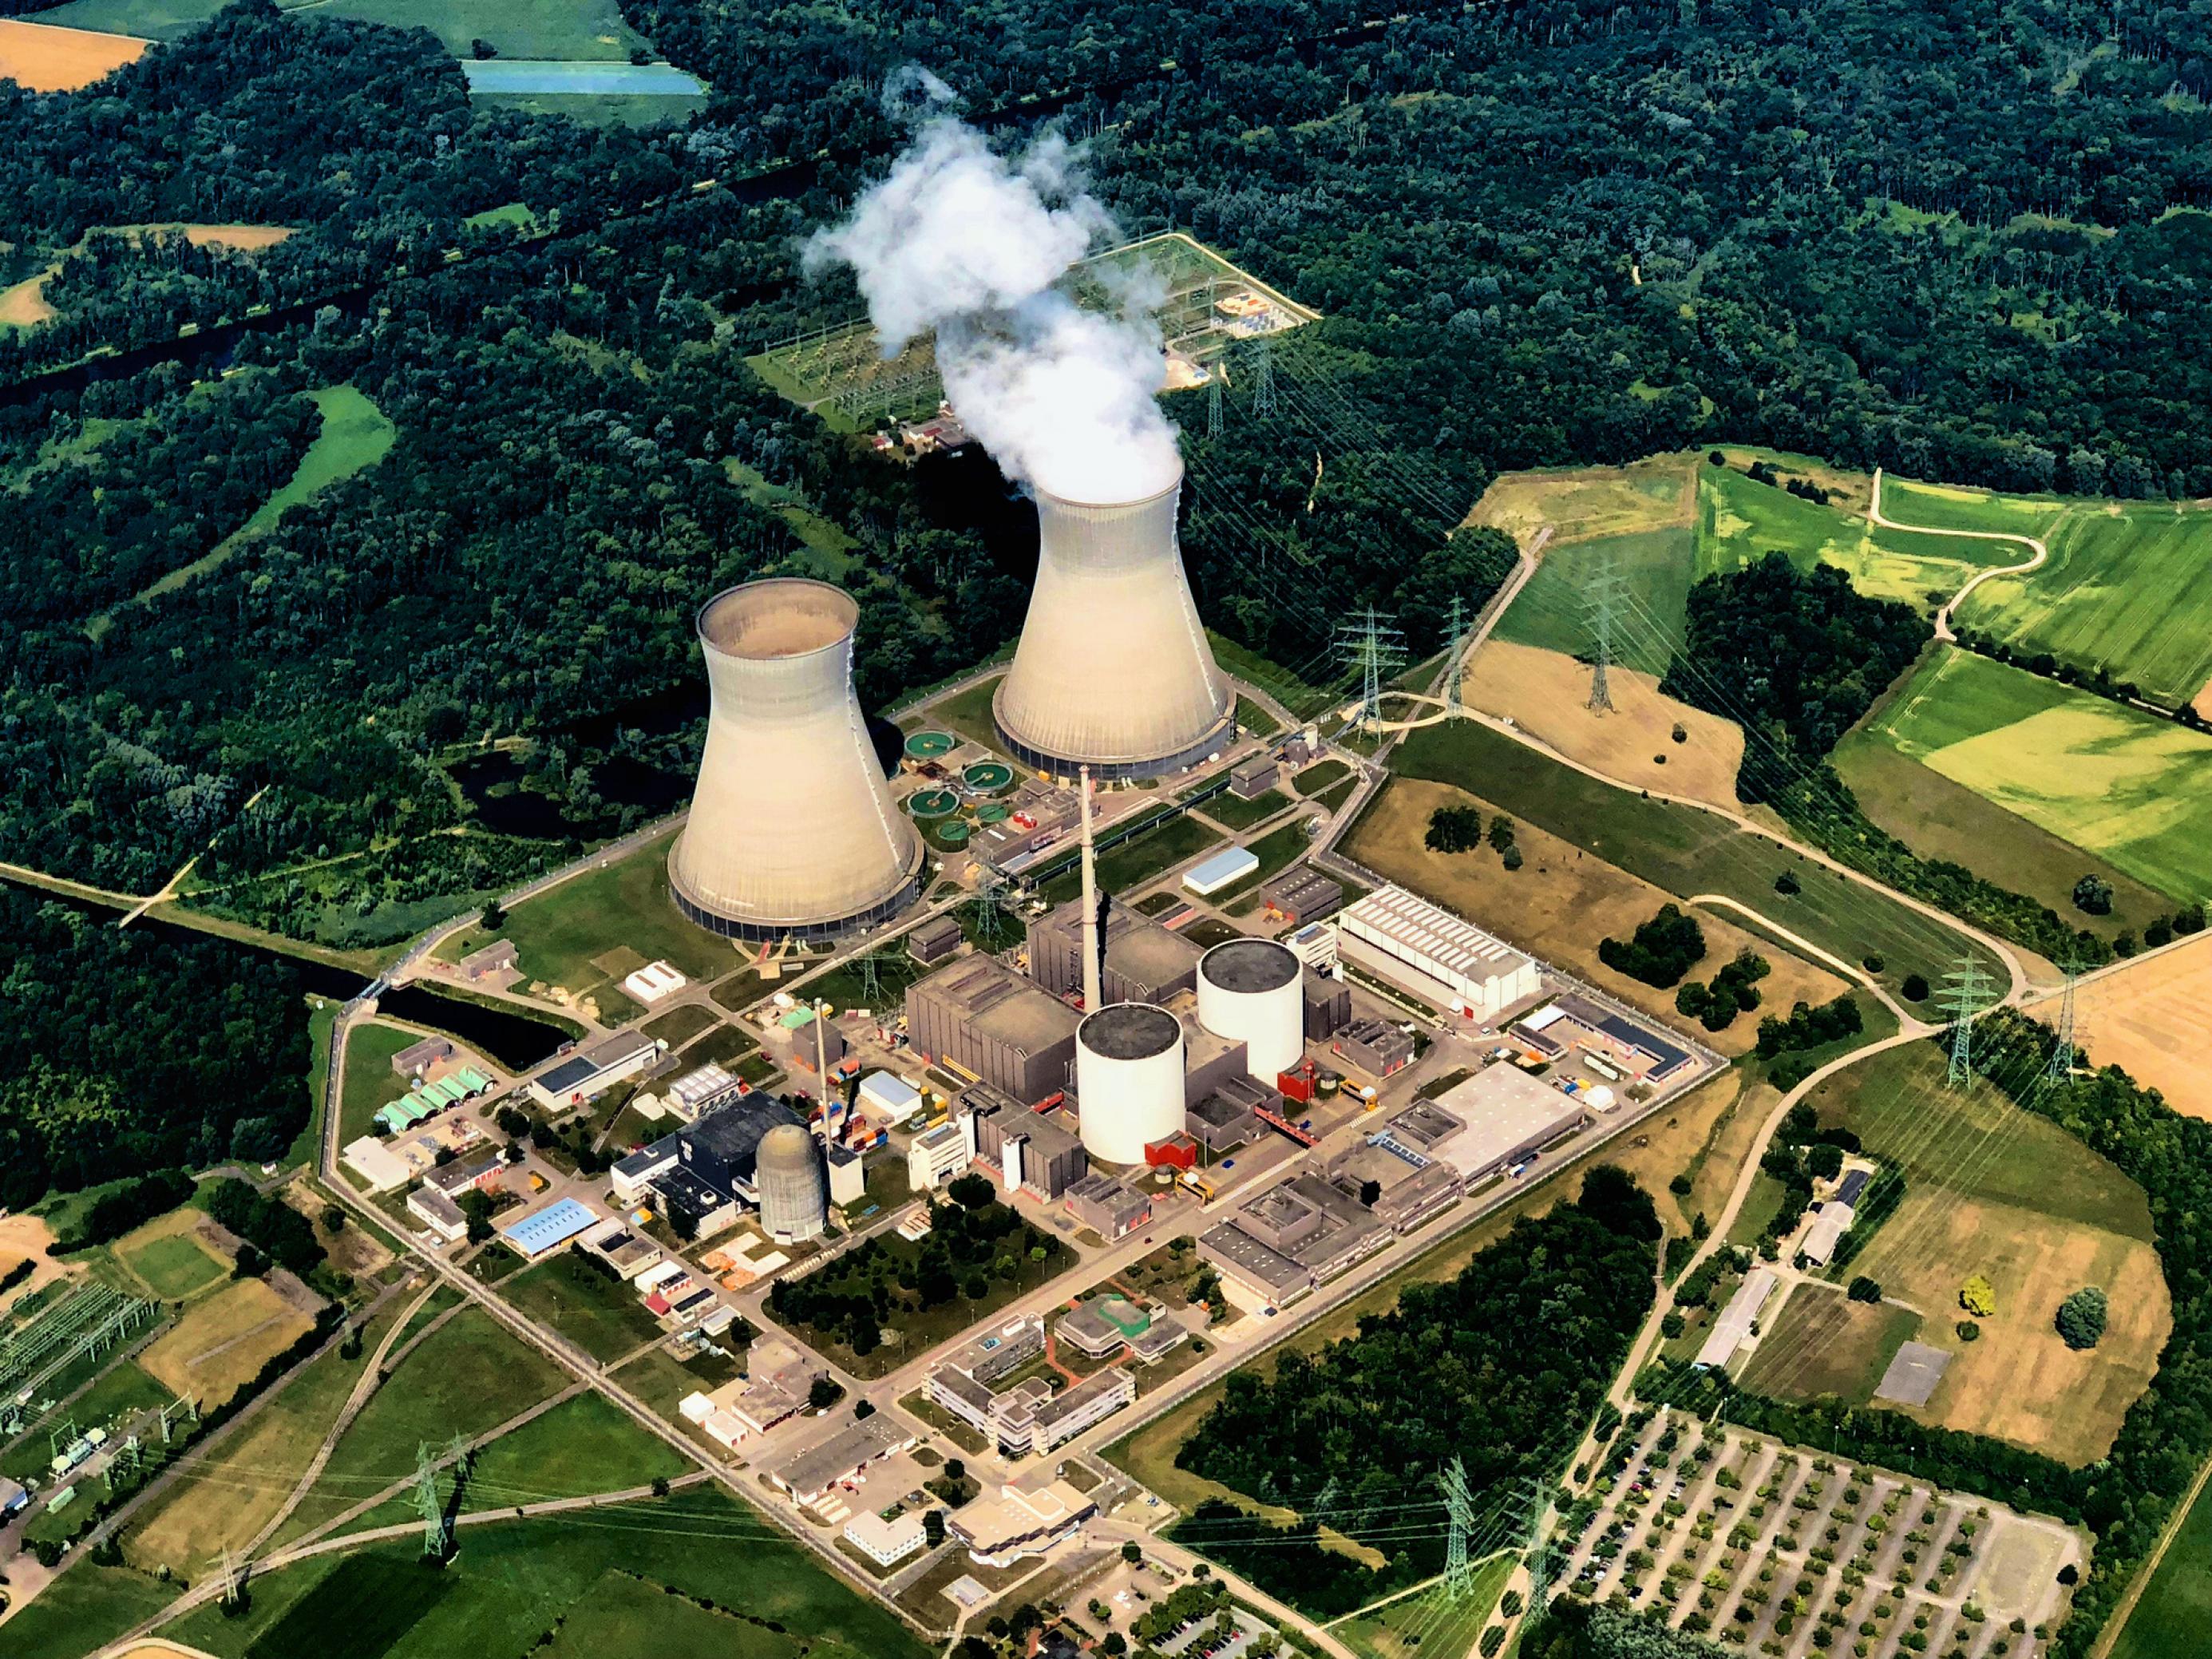 Das Kraftwerksgelände aus der Luft mit seinen Kühltürmen und dem Reaktorblock, umgeben von Wald und Wiesen.